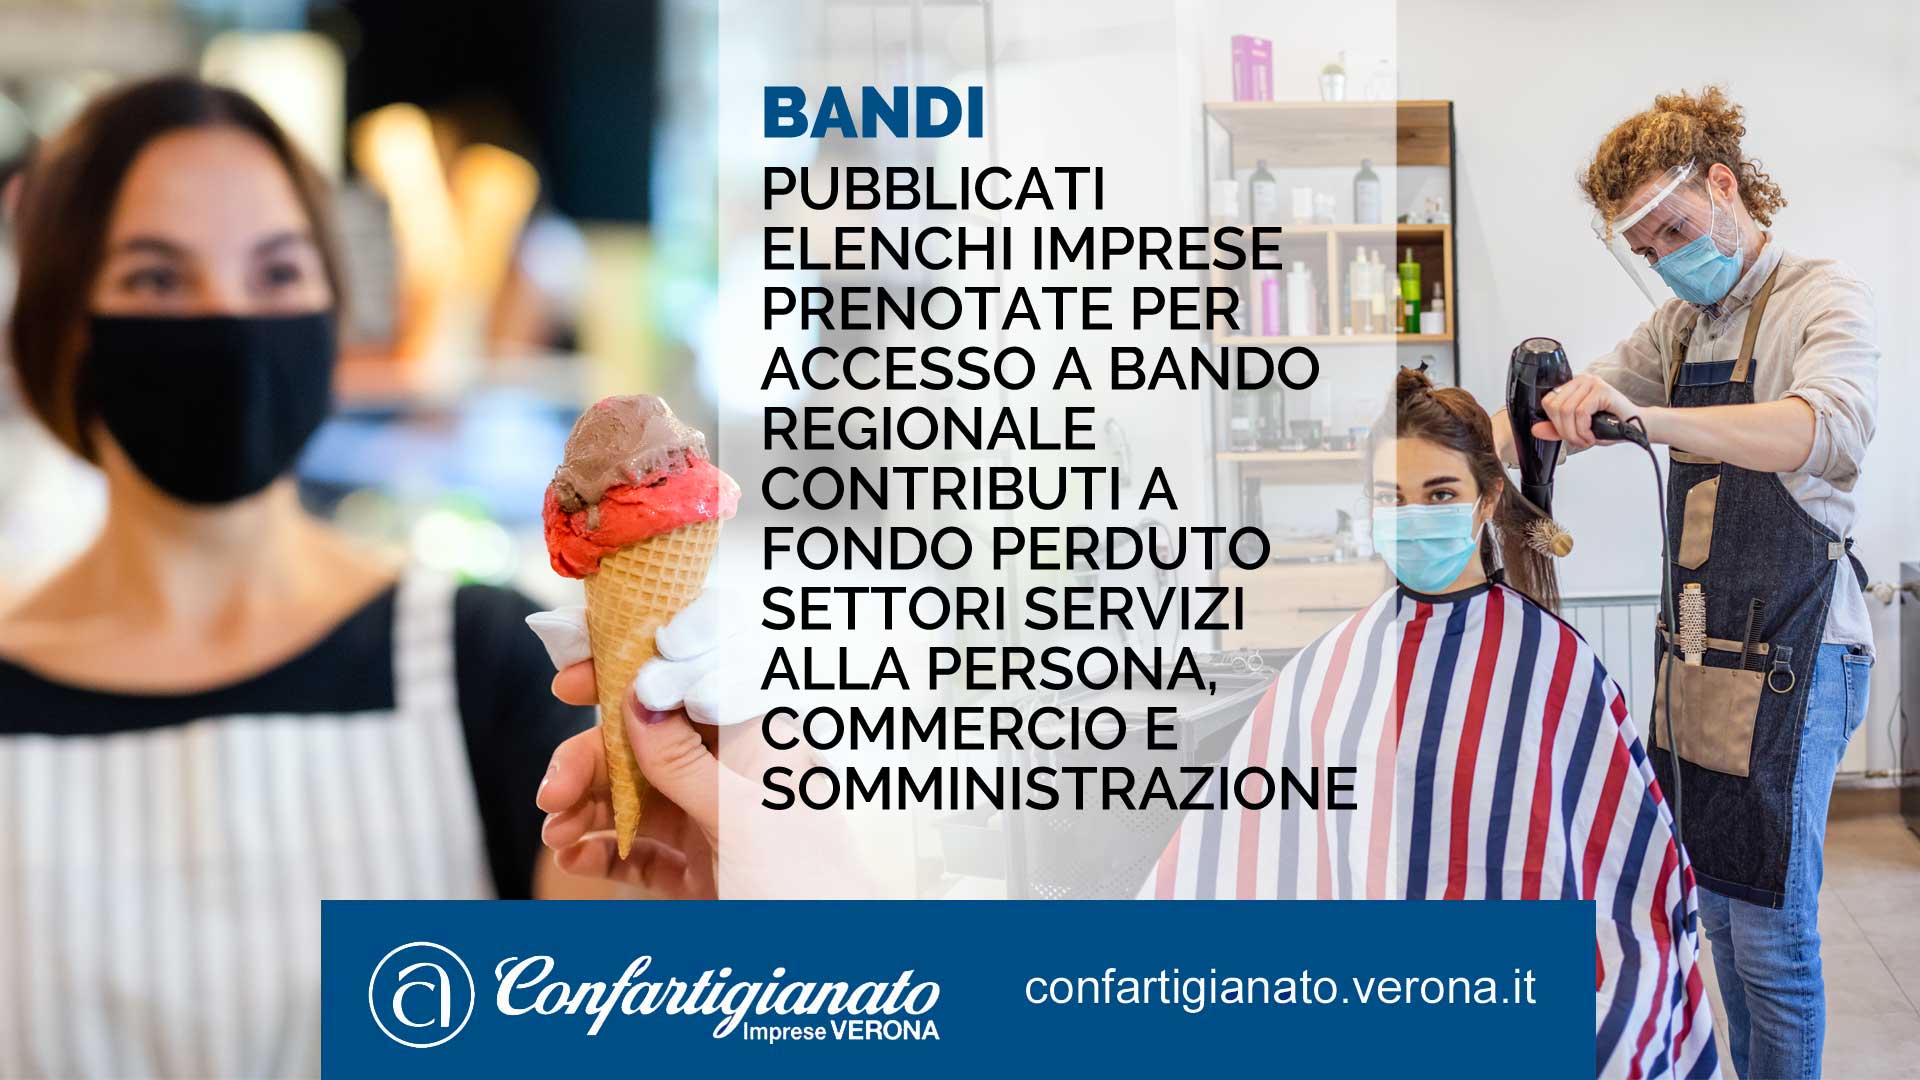 SPORTELLO BANDI – Pubblicati elenchi imprese prenotate per accesso a Bando regionale contributi a fondo perduto settori Servizi alla Persona, Commercio e Somministrazione